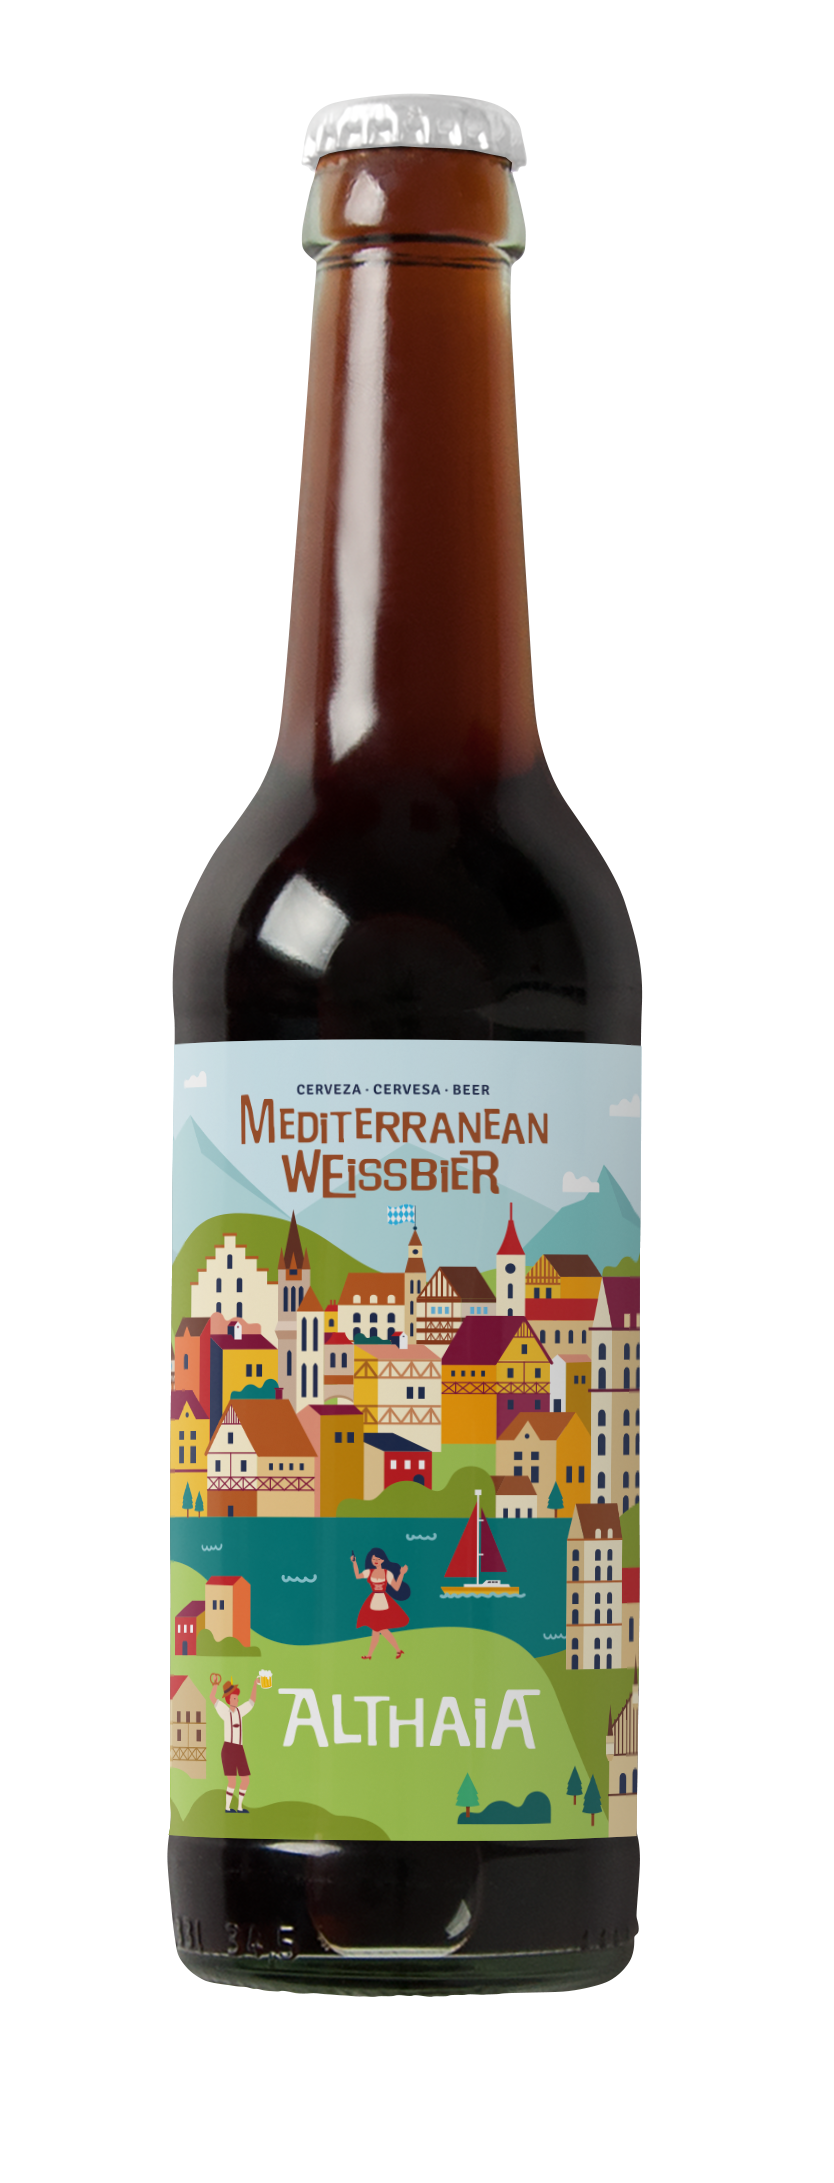 Mediterranean Weissbier